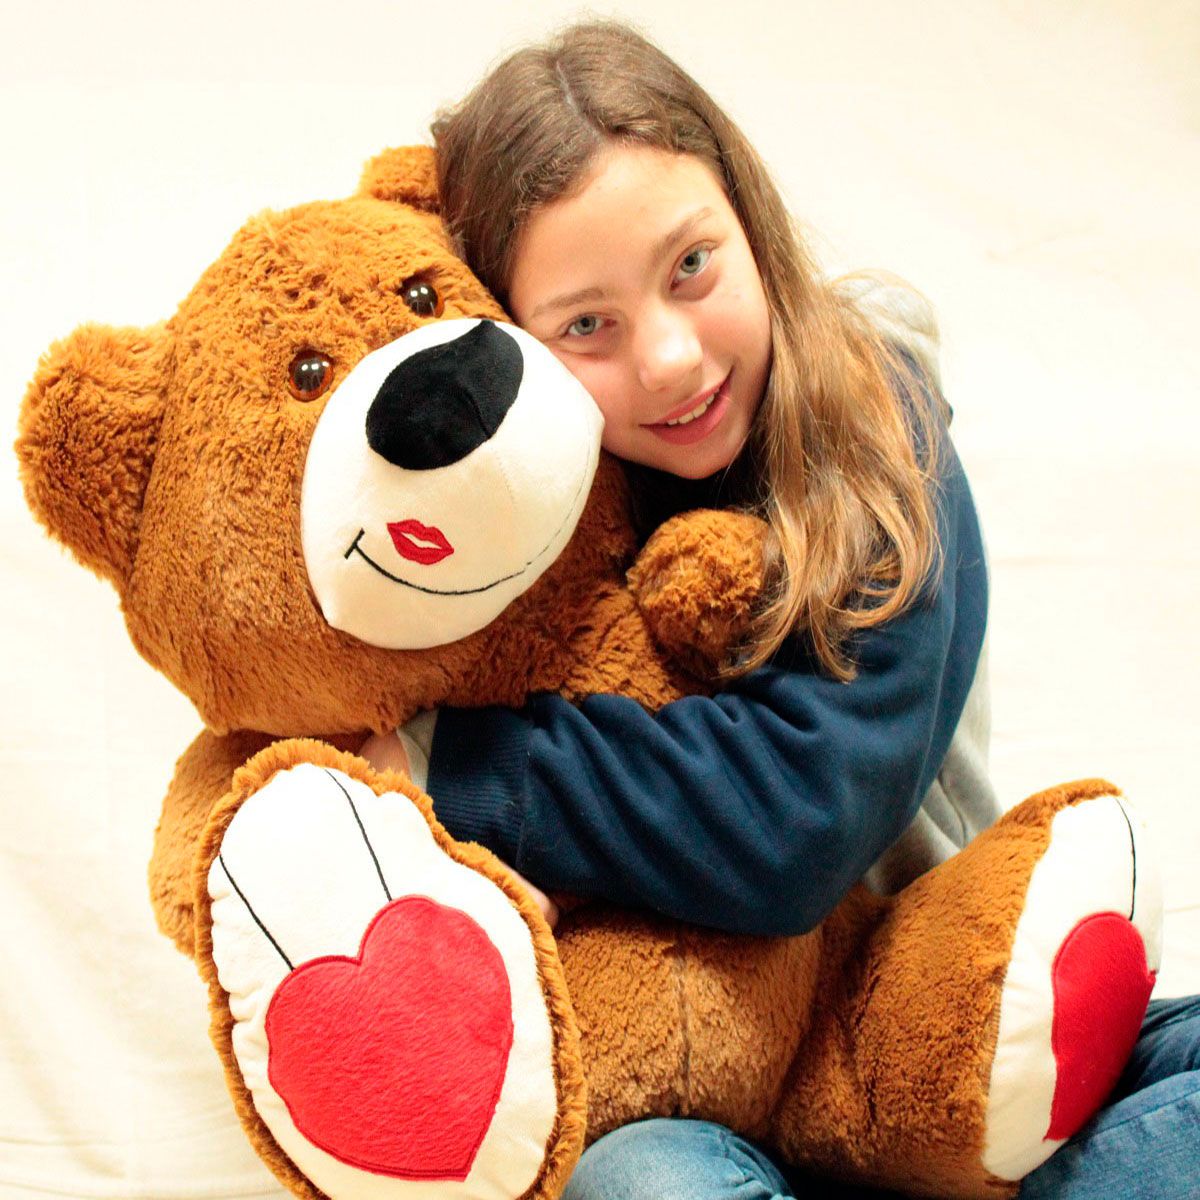 Urso de Pelúcia Marrom Beijinho Grande Macio de 60cm Presente Romântico para Namorada Namorado